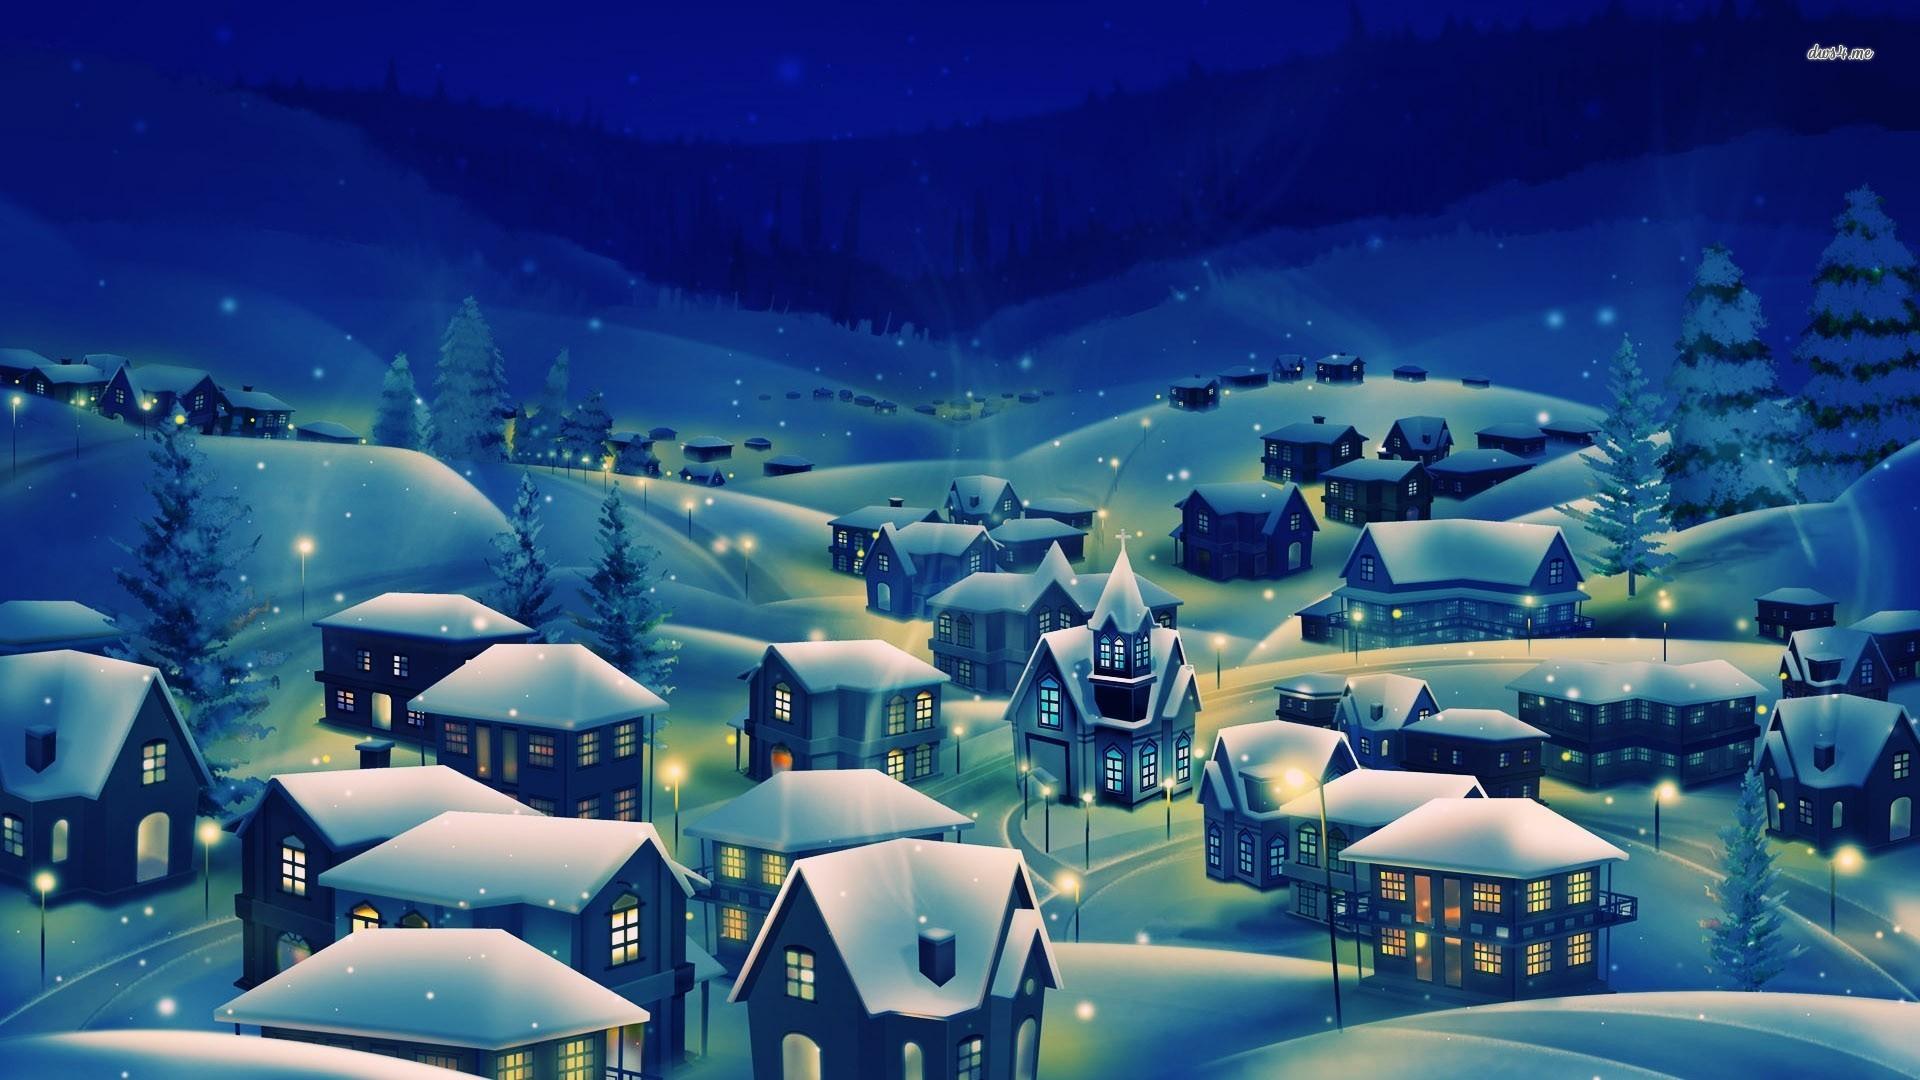 Snowy village at night wallpaper Art wallpaper